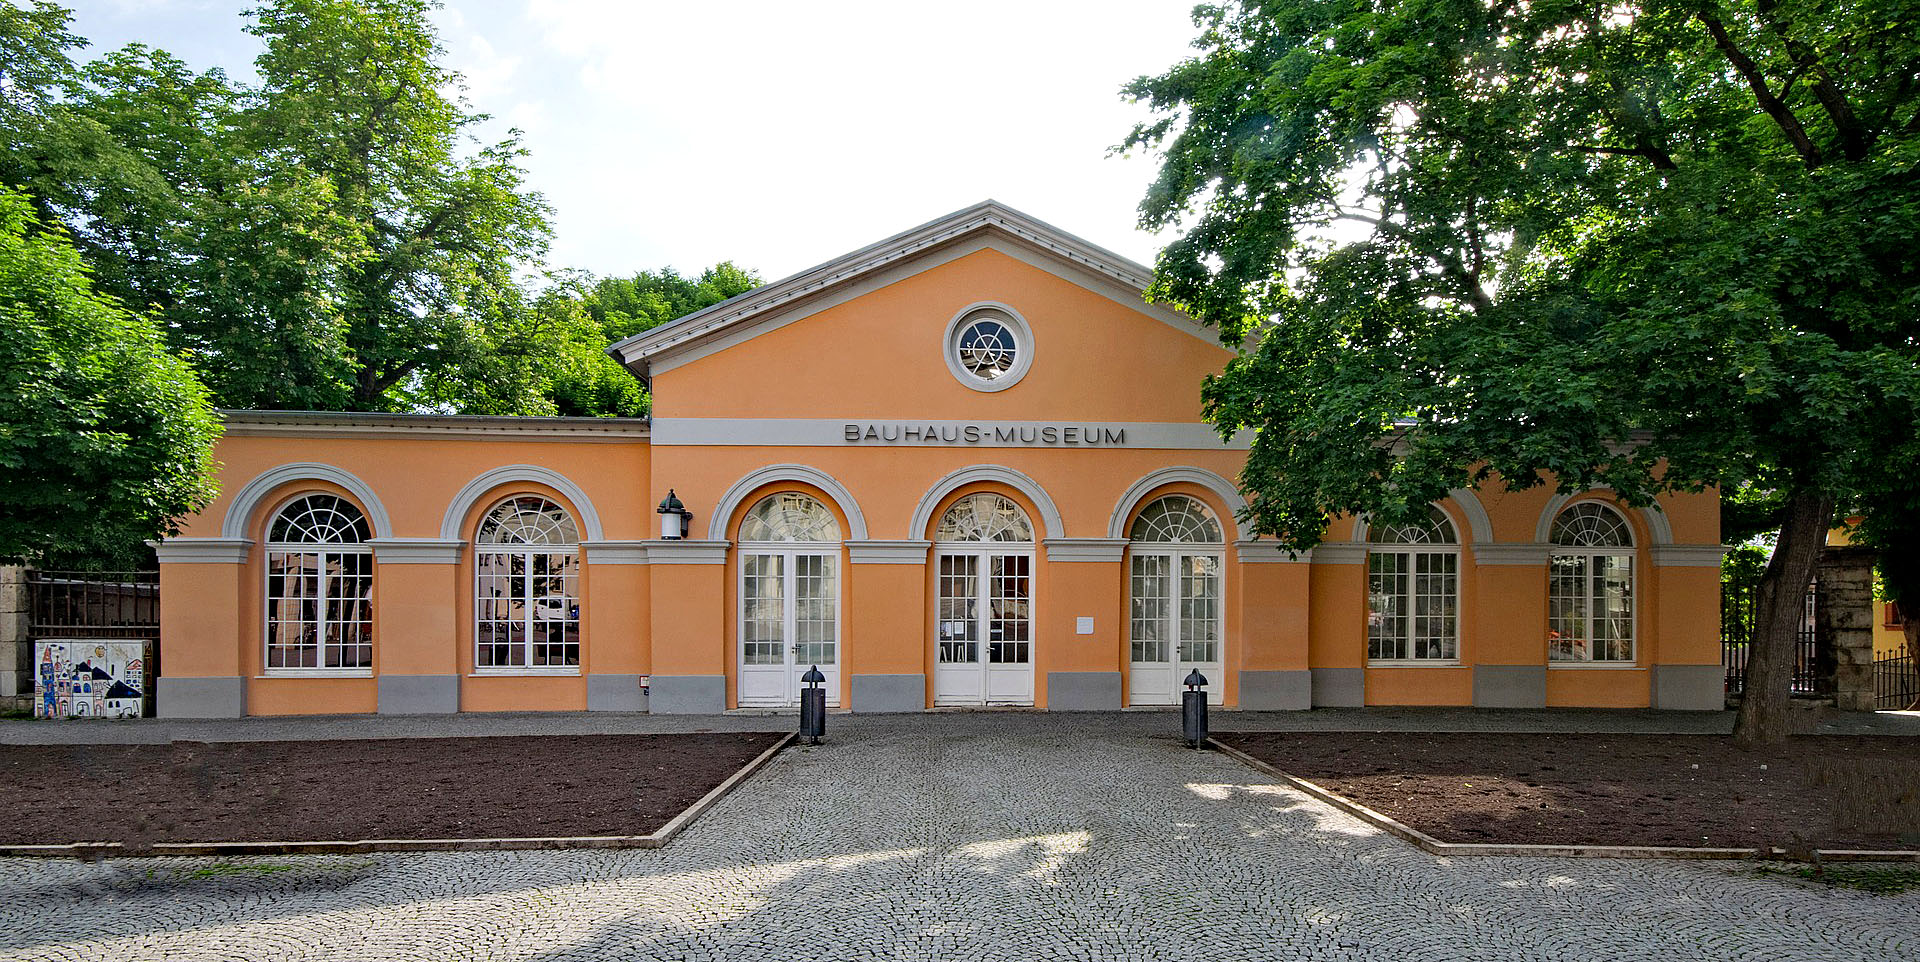 BauhausMuseum, Weimar